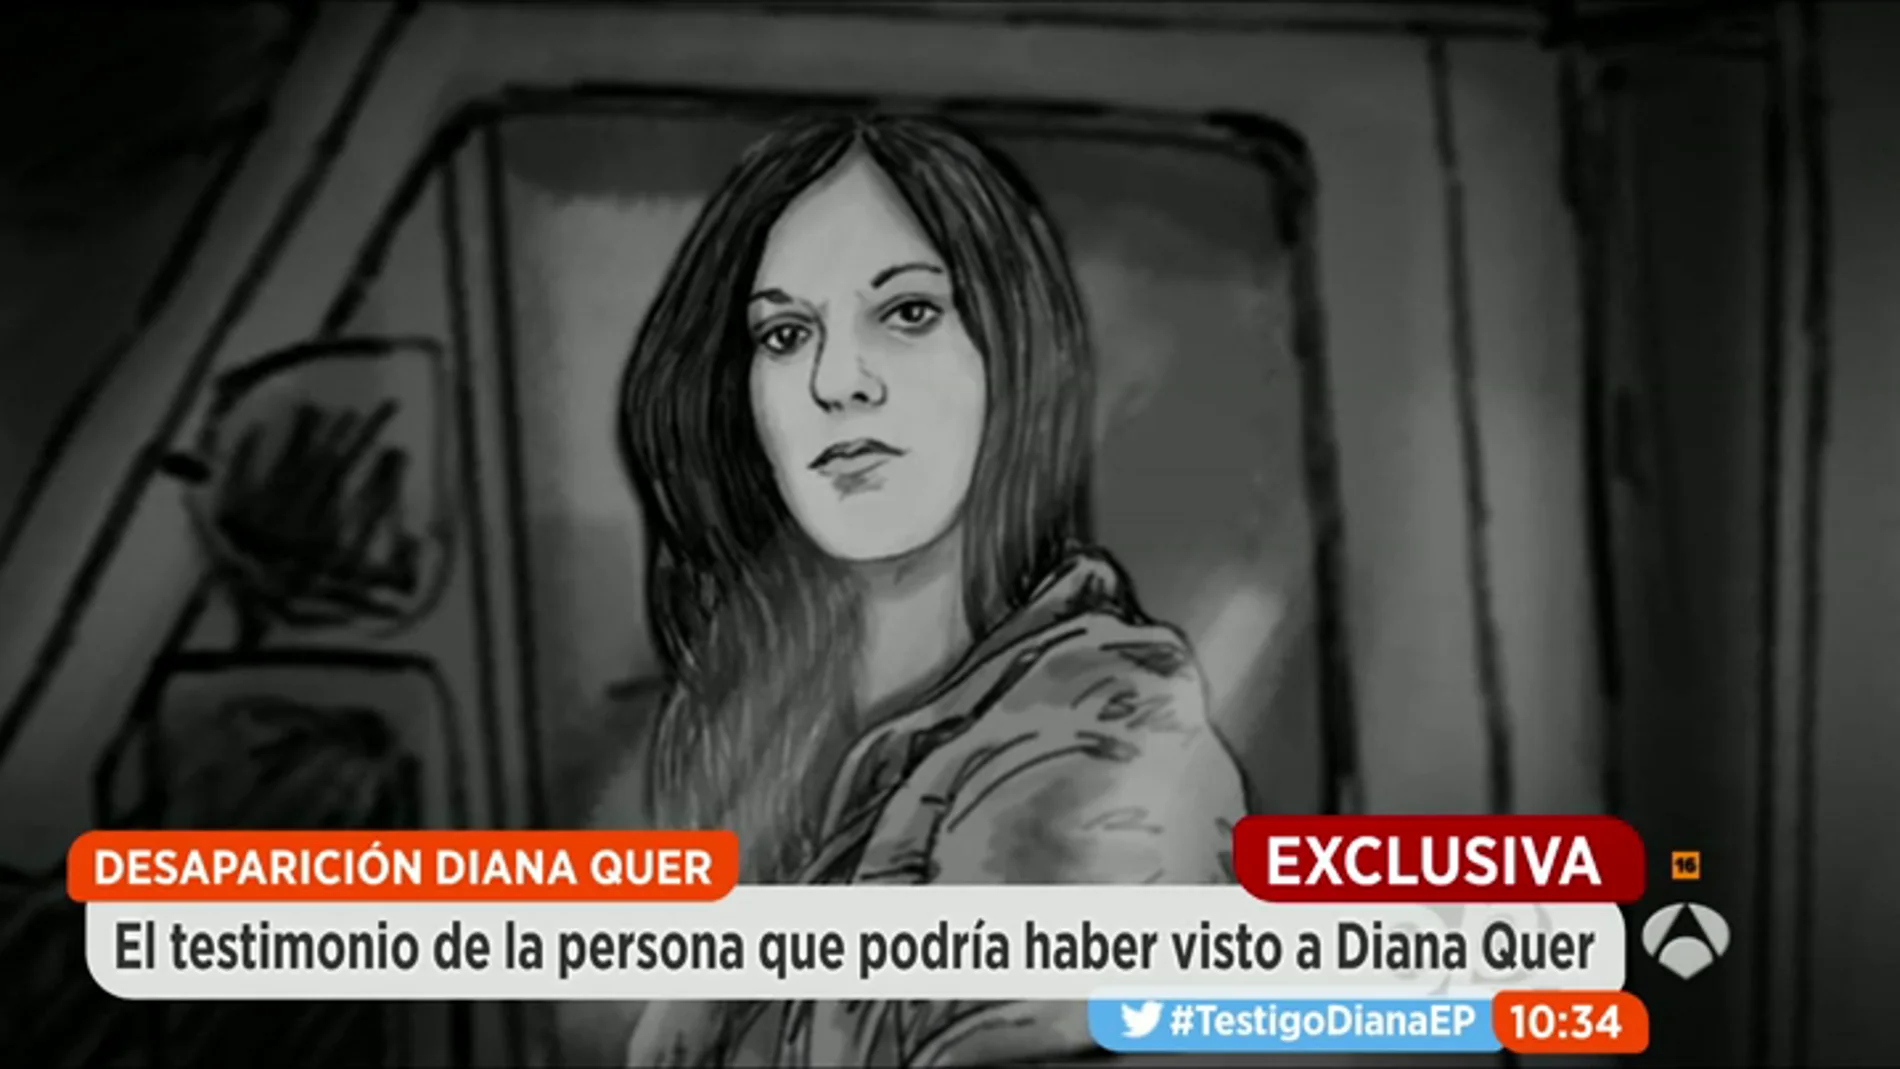 Frame 165.90831 de: El testimonio de los testigos que vieron a Diana Quer en una caravana la noche de su desaparición: "¿Te has fijado?, ¡Qué raro!"